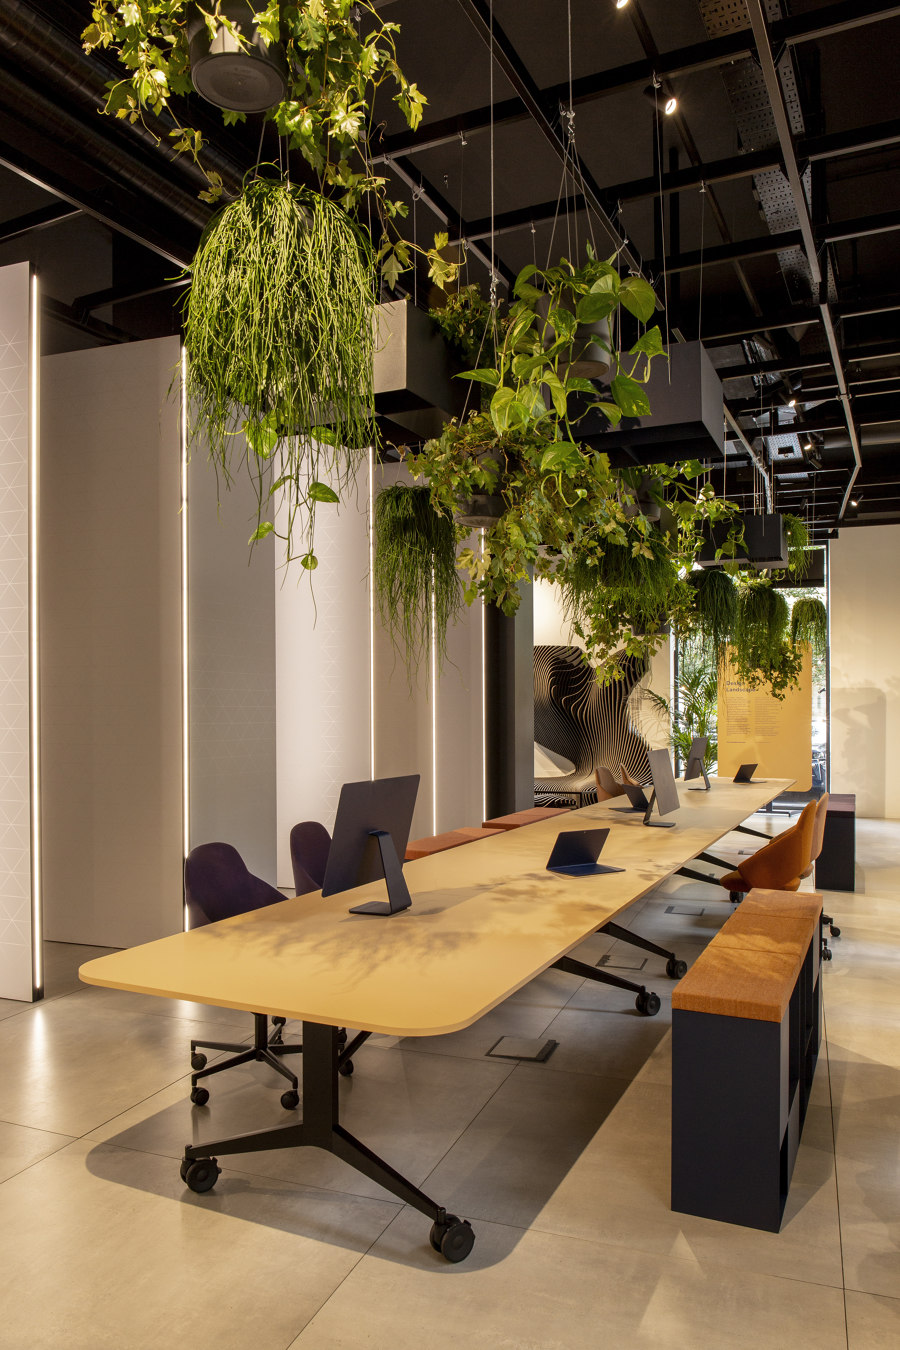 Mara’s Milan manifesto: designing furniture that makes us feel | News